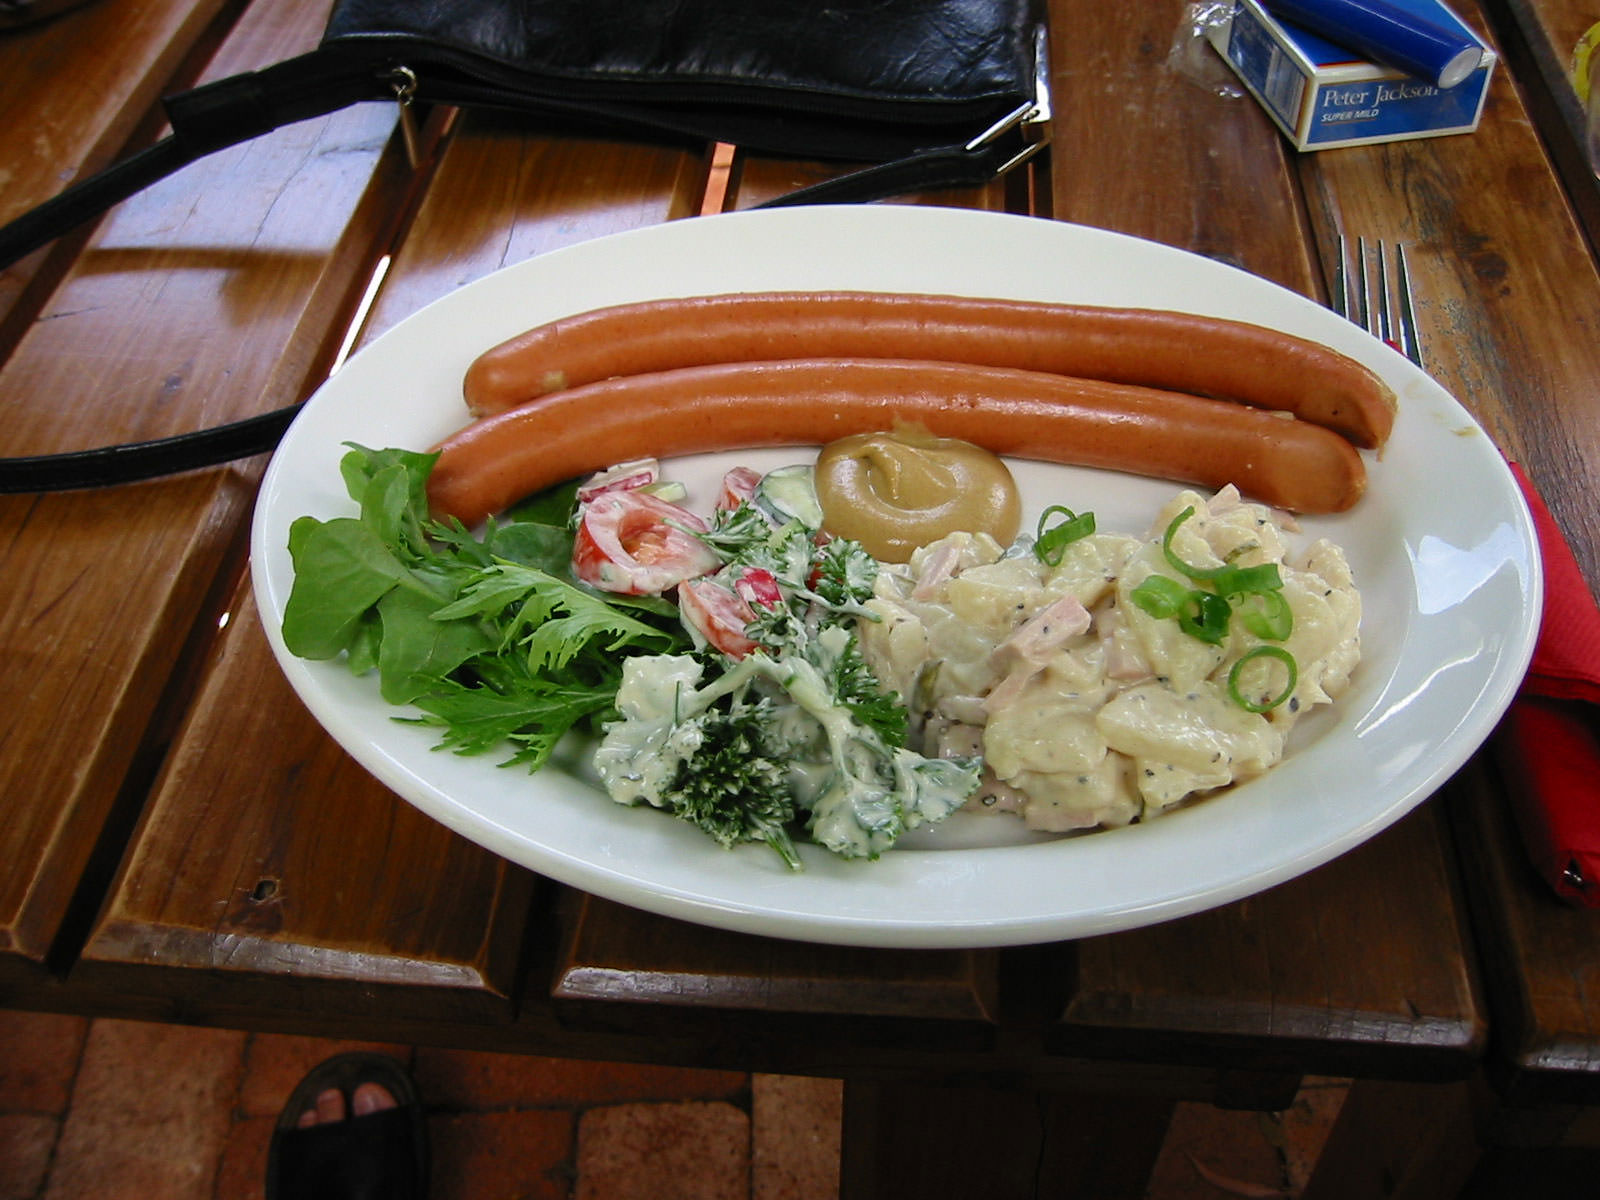 Frankfurters and potato salad